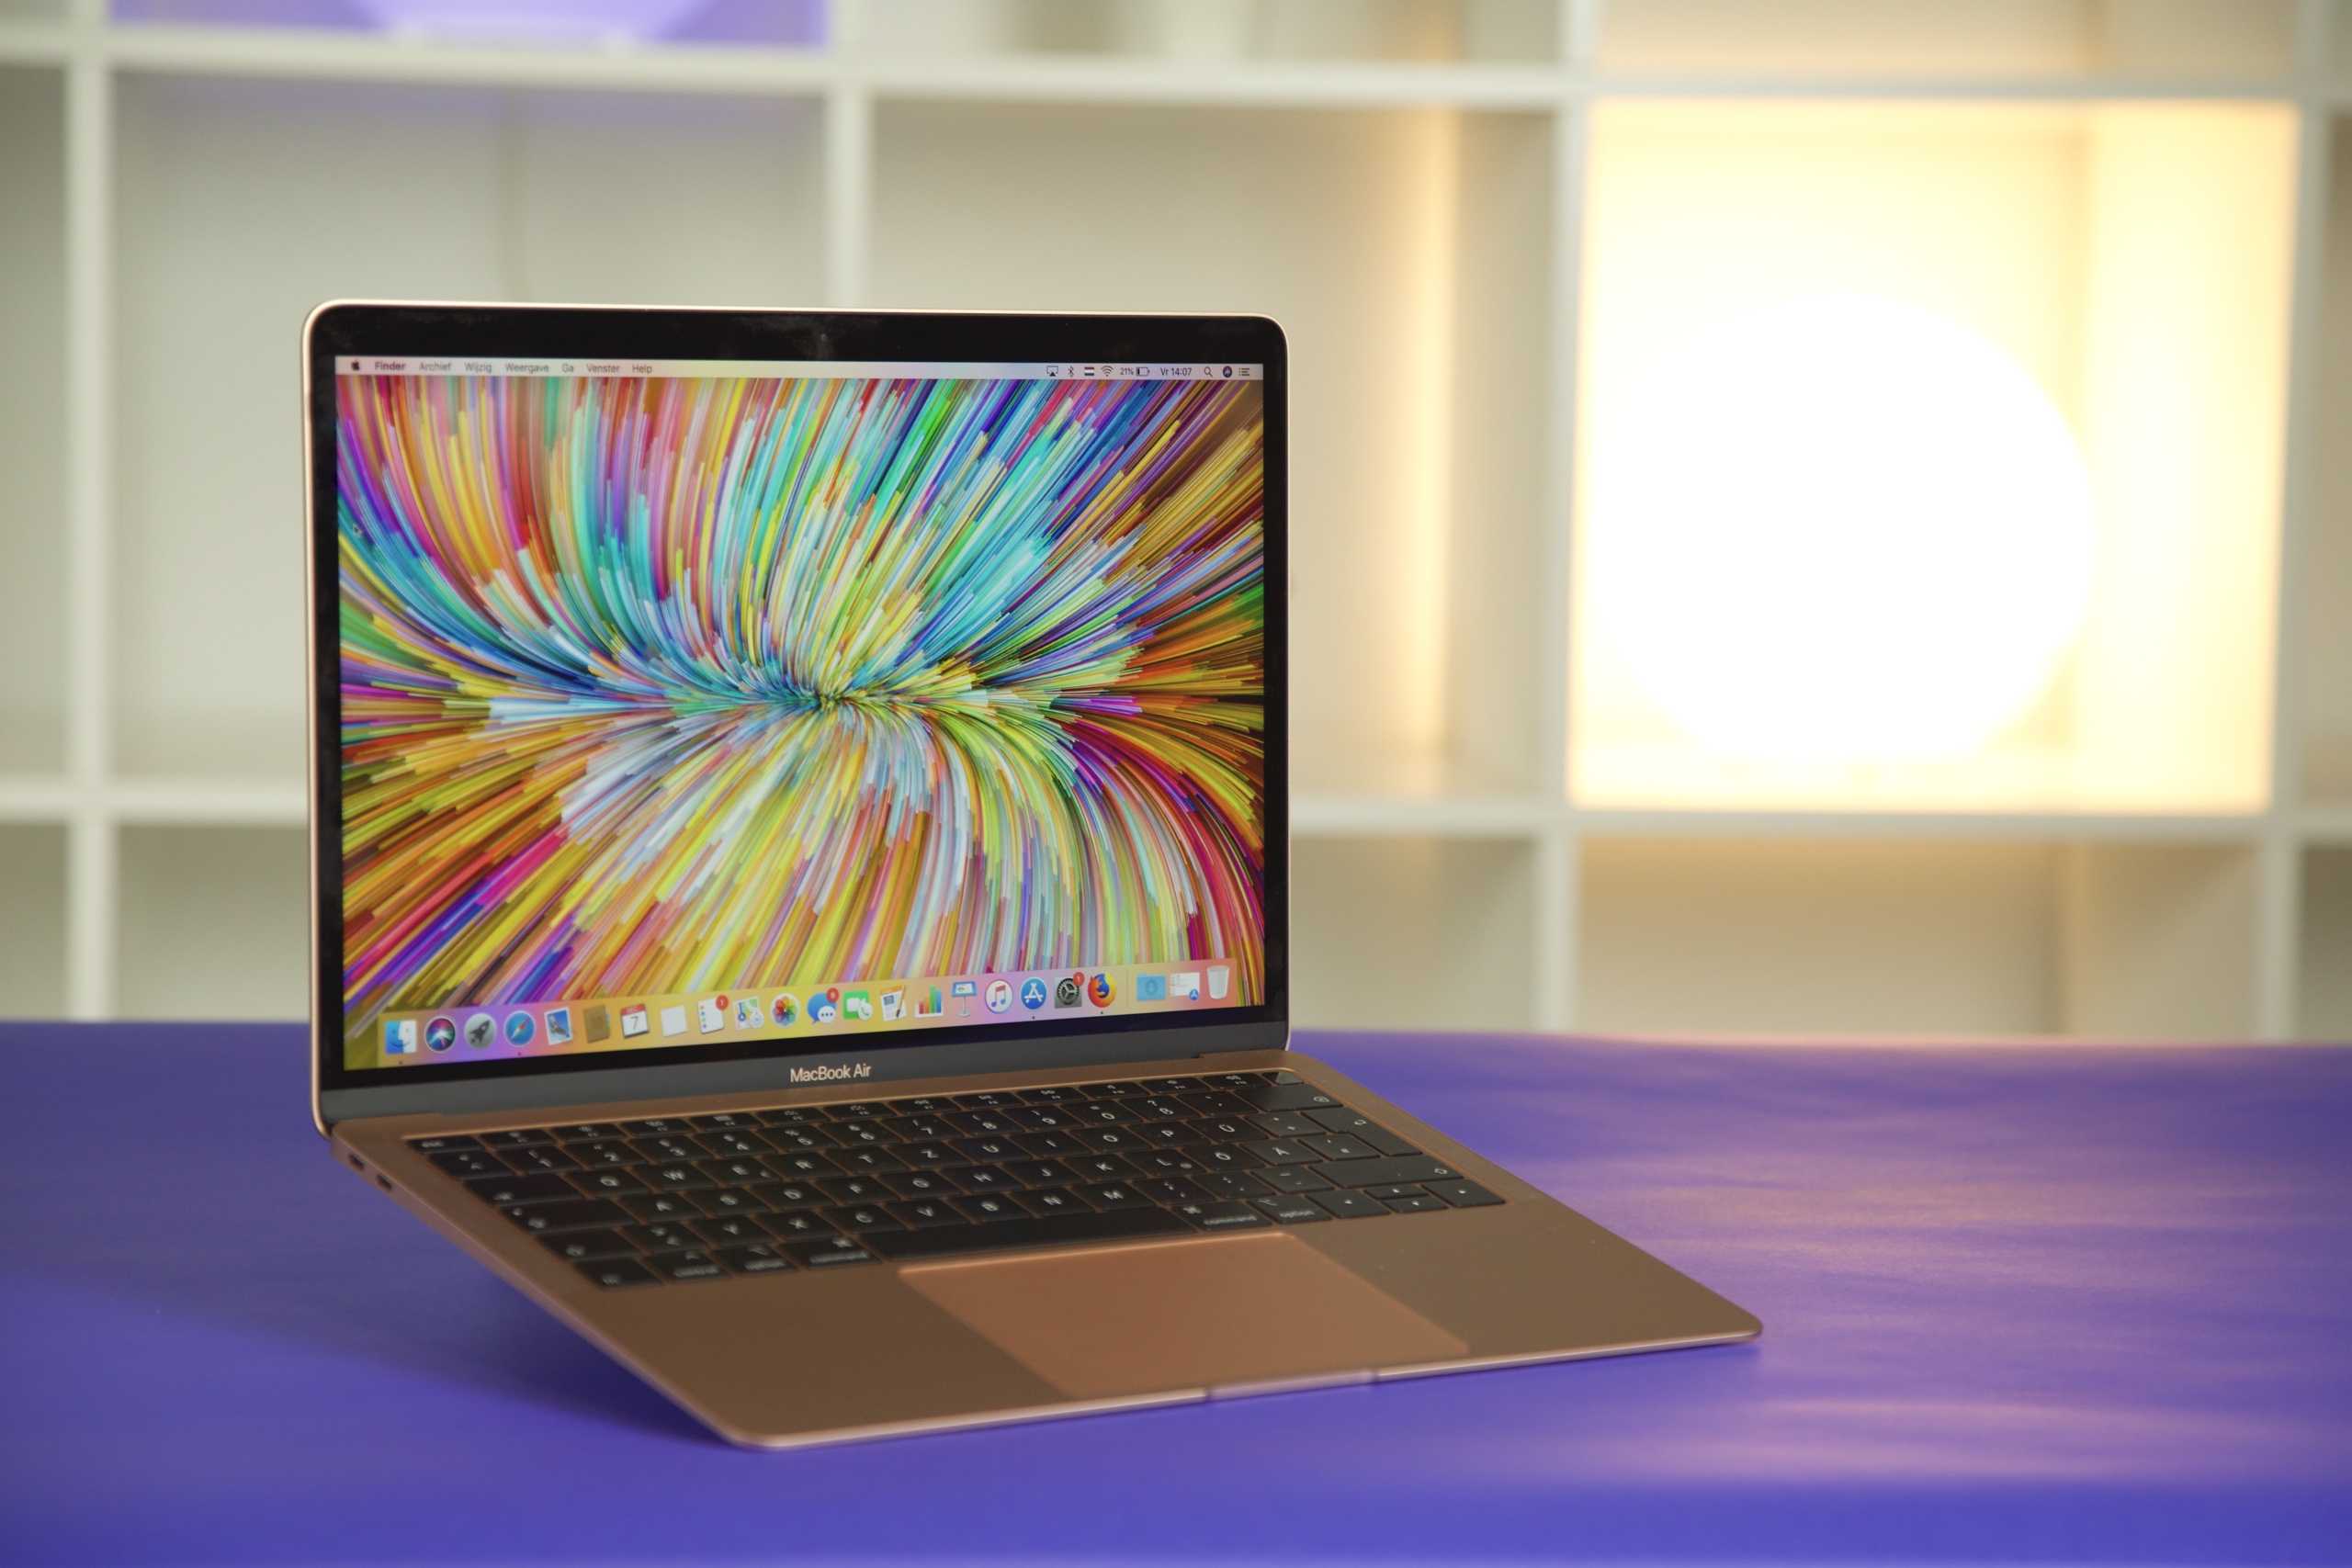 Ноутбук apple macbook air 13 retina (2020 года) z0yj000sz space grey — купить, цена и характеристики, отзывы